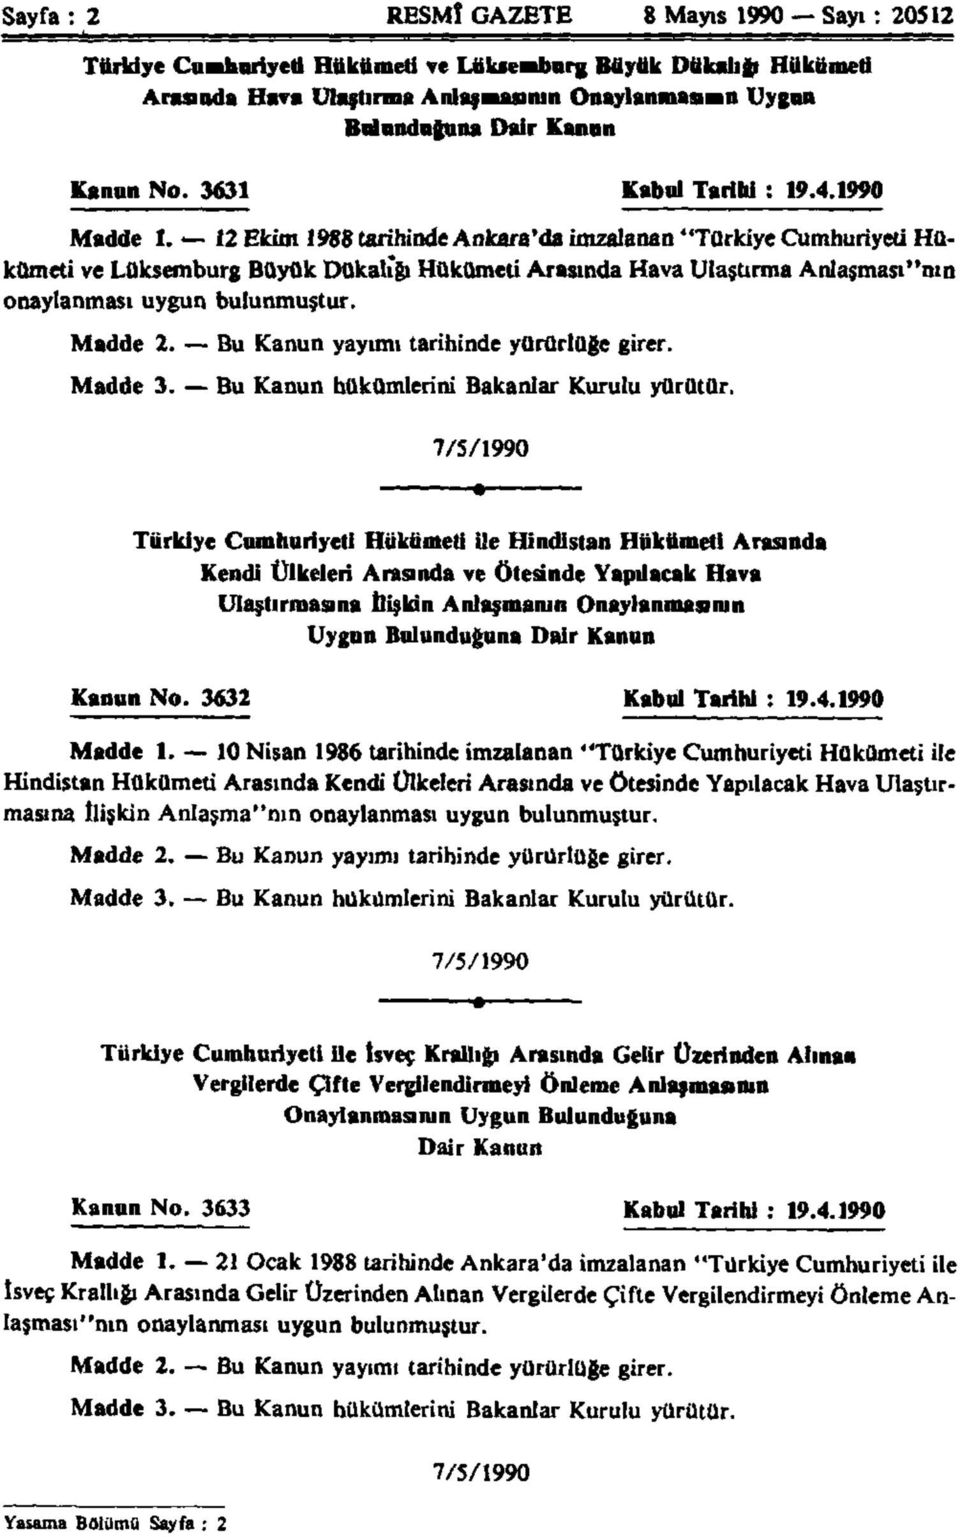 12 Ekim 1988 tarihinde Ankara'da imzalanan "Türkiye Cumhuriyeti Hükümeti ve Lüksemburg Büyük Dukalığı Hükümeti Arasında Hava Ulaştırma Anlaşması"nın onaylanması uygun bulunmuştur. Madde 2.